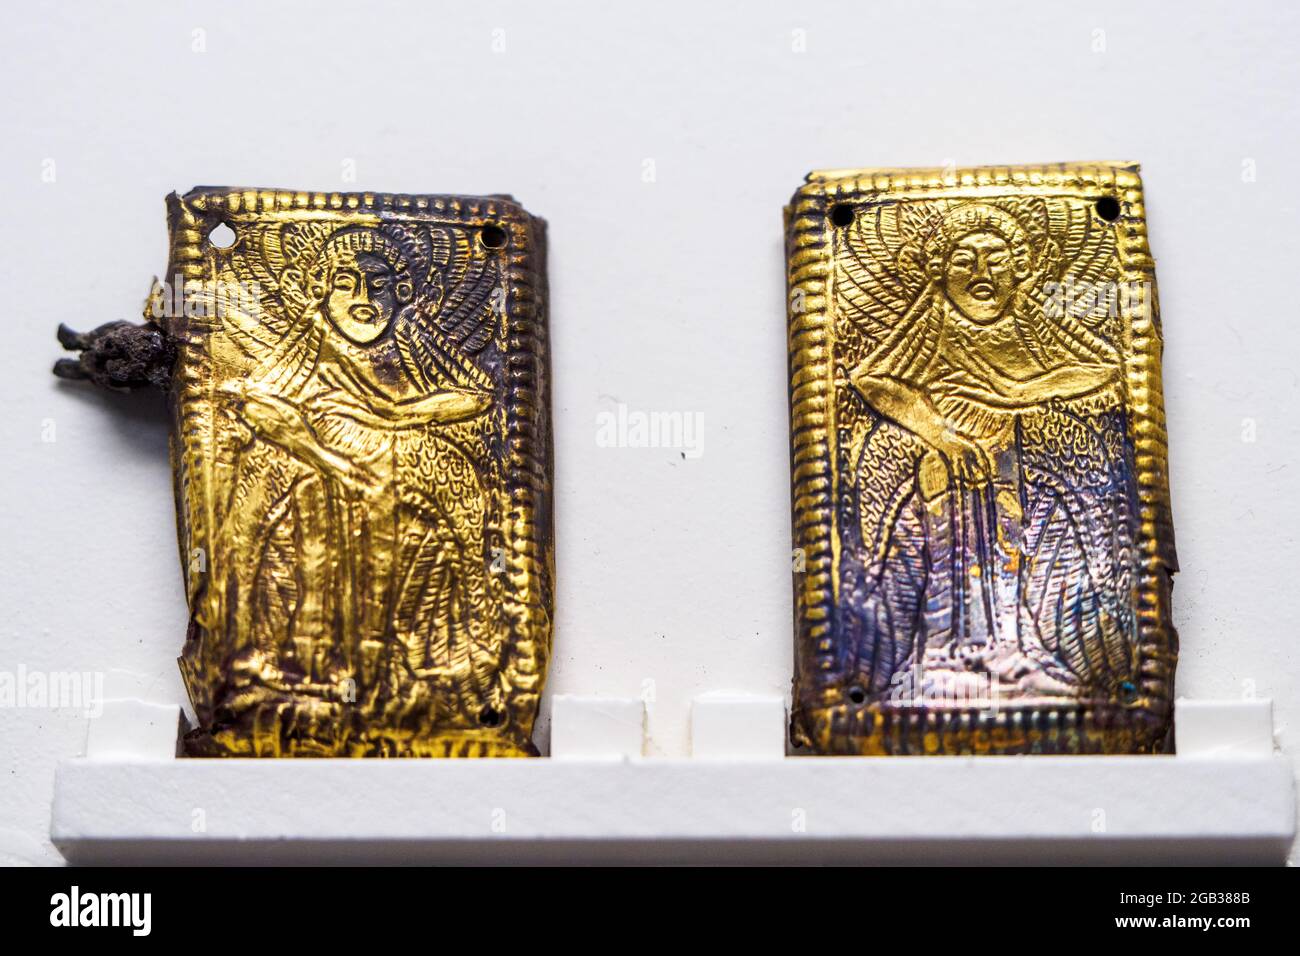 Crochets de ceinture: Deux plaques quadrangulaires d'or avec une figure de femelle ailé (6e cent BC) - Musée archéologique national de Tarquinia, Italie Banque D'Images